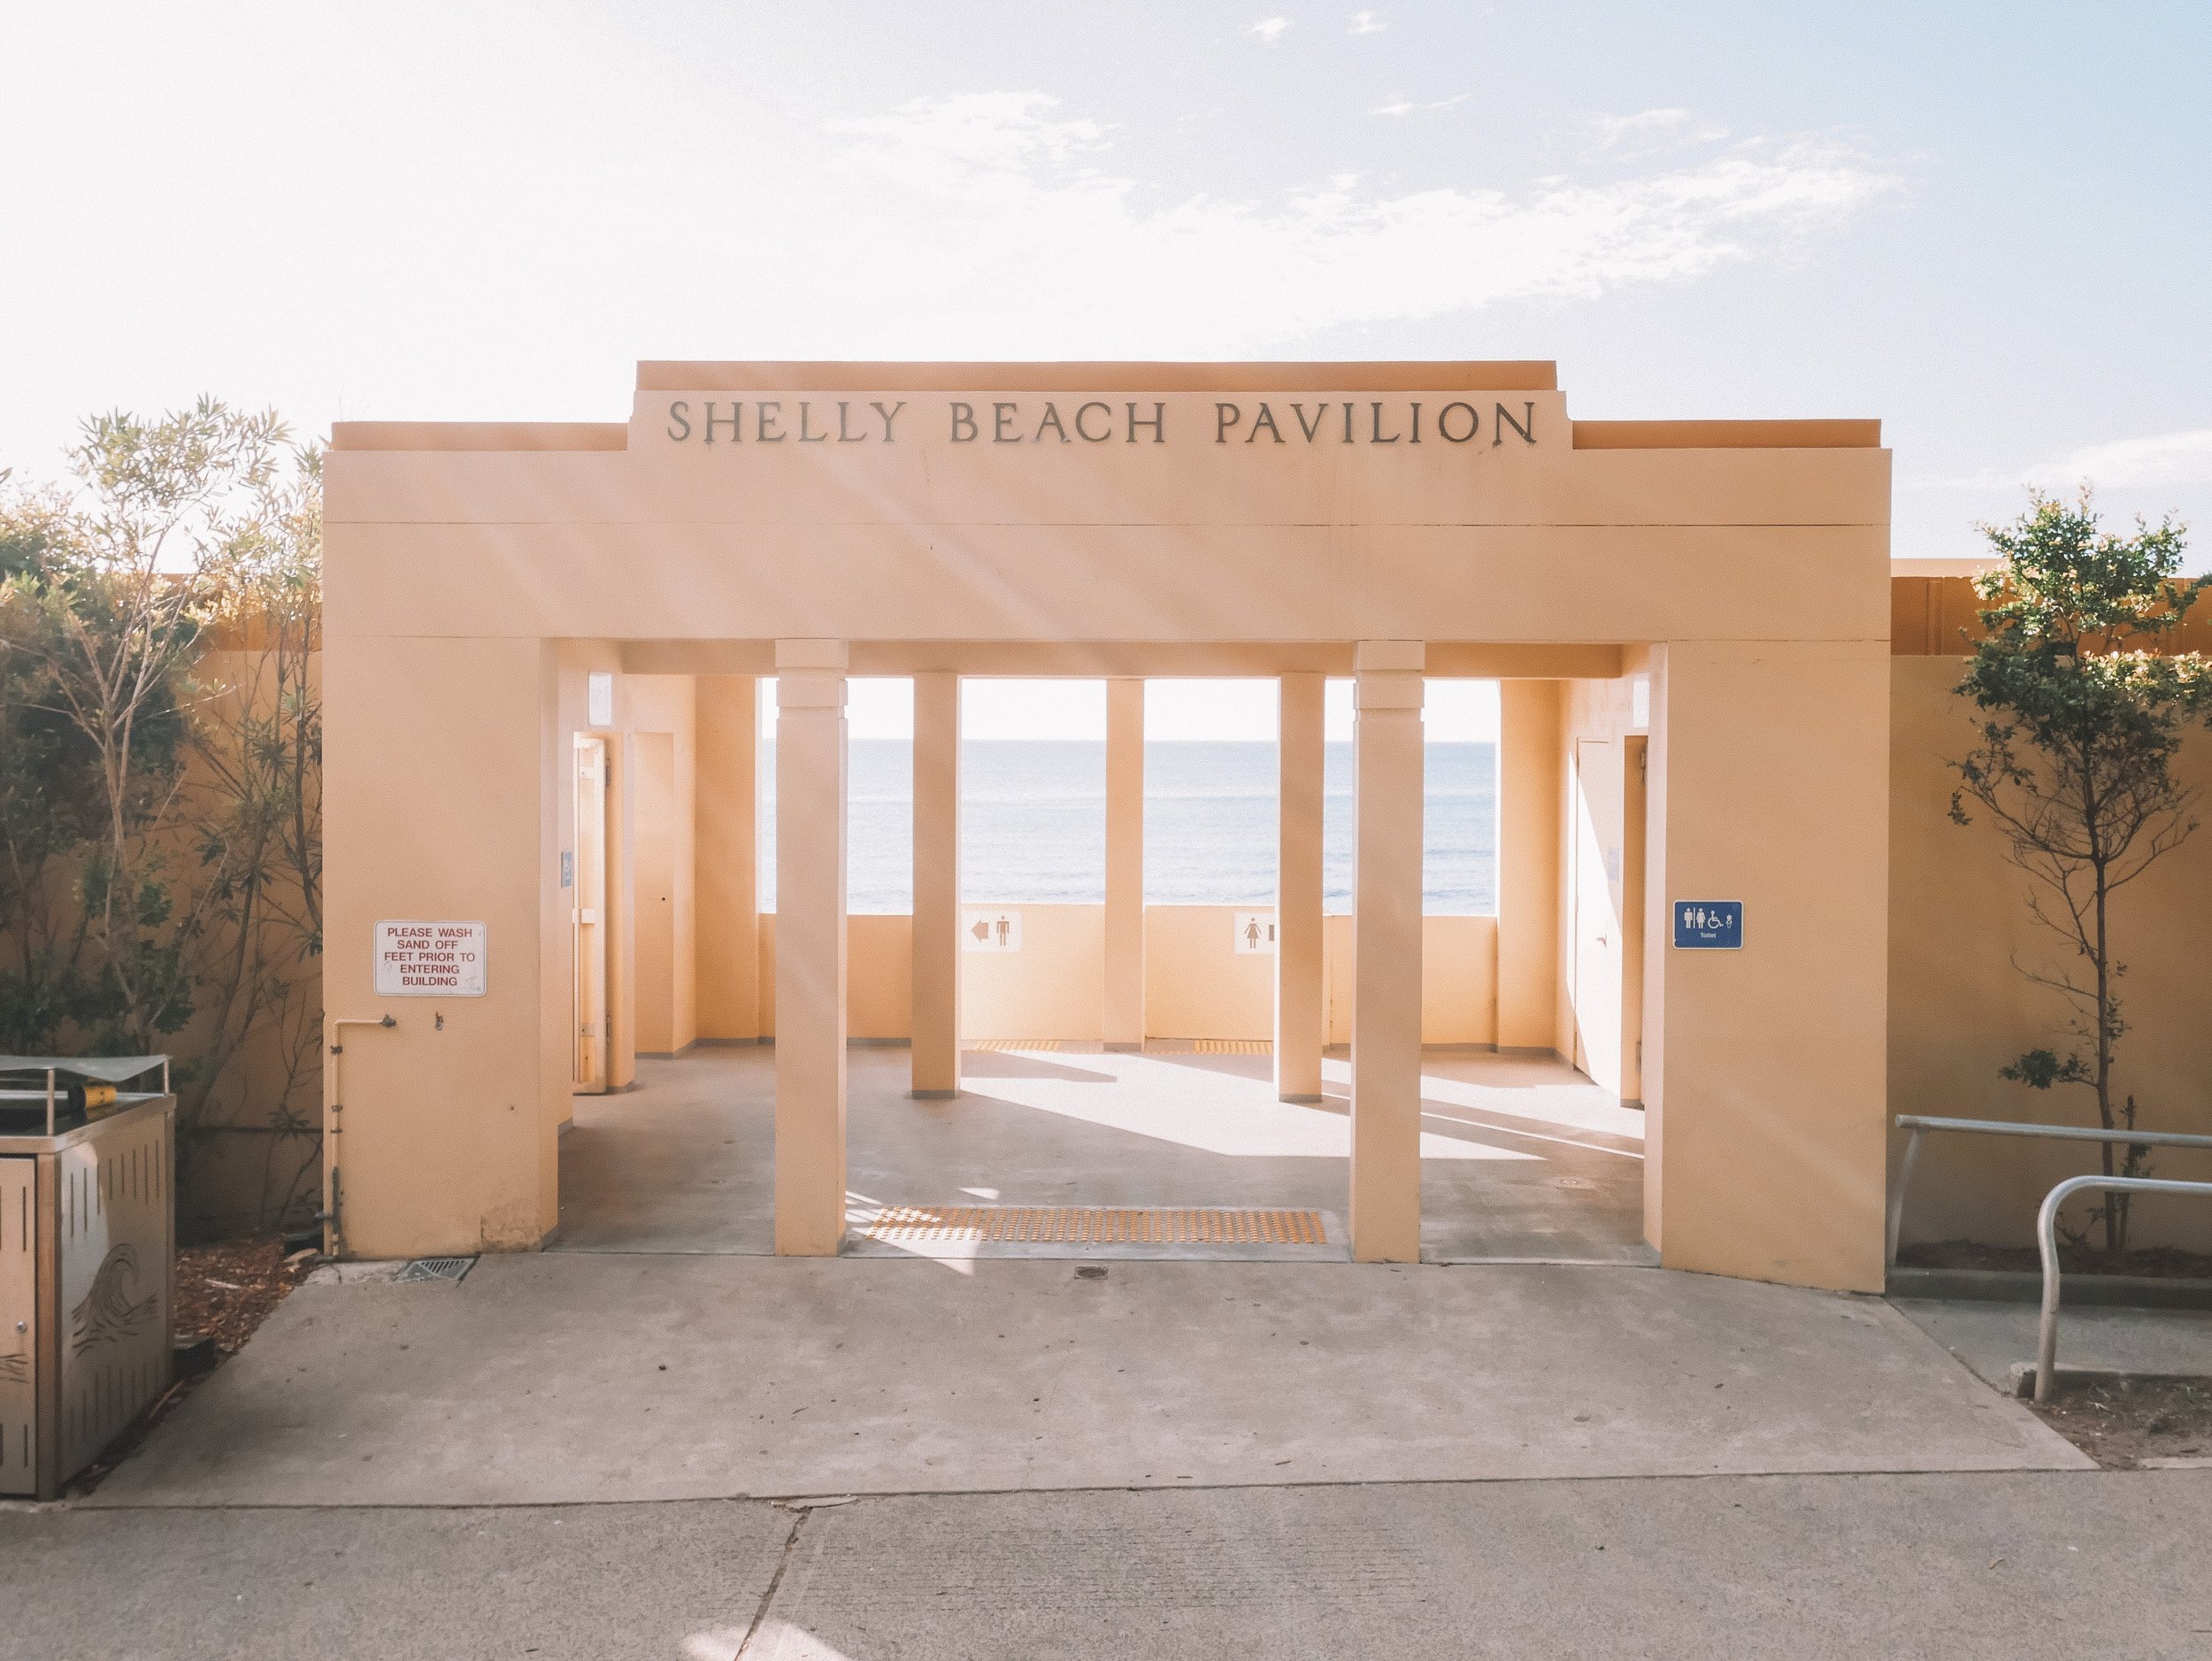 Le pavillon de Shelly Beach - Cronulla - Sydney - Nouvelle-Galles-du-Sud (NSW) - Australie